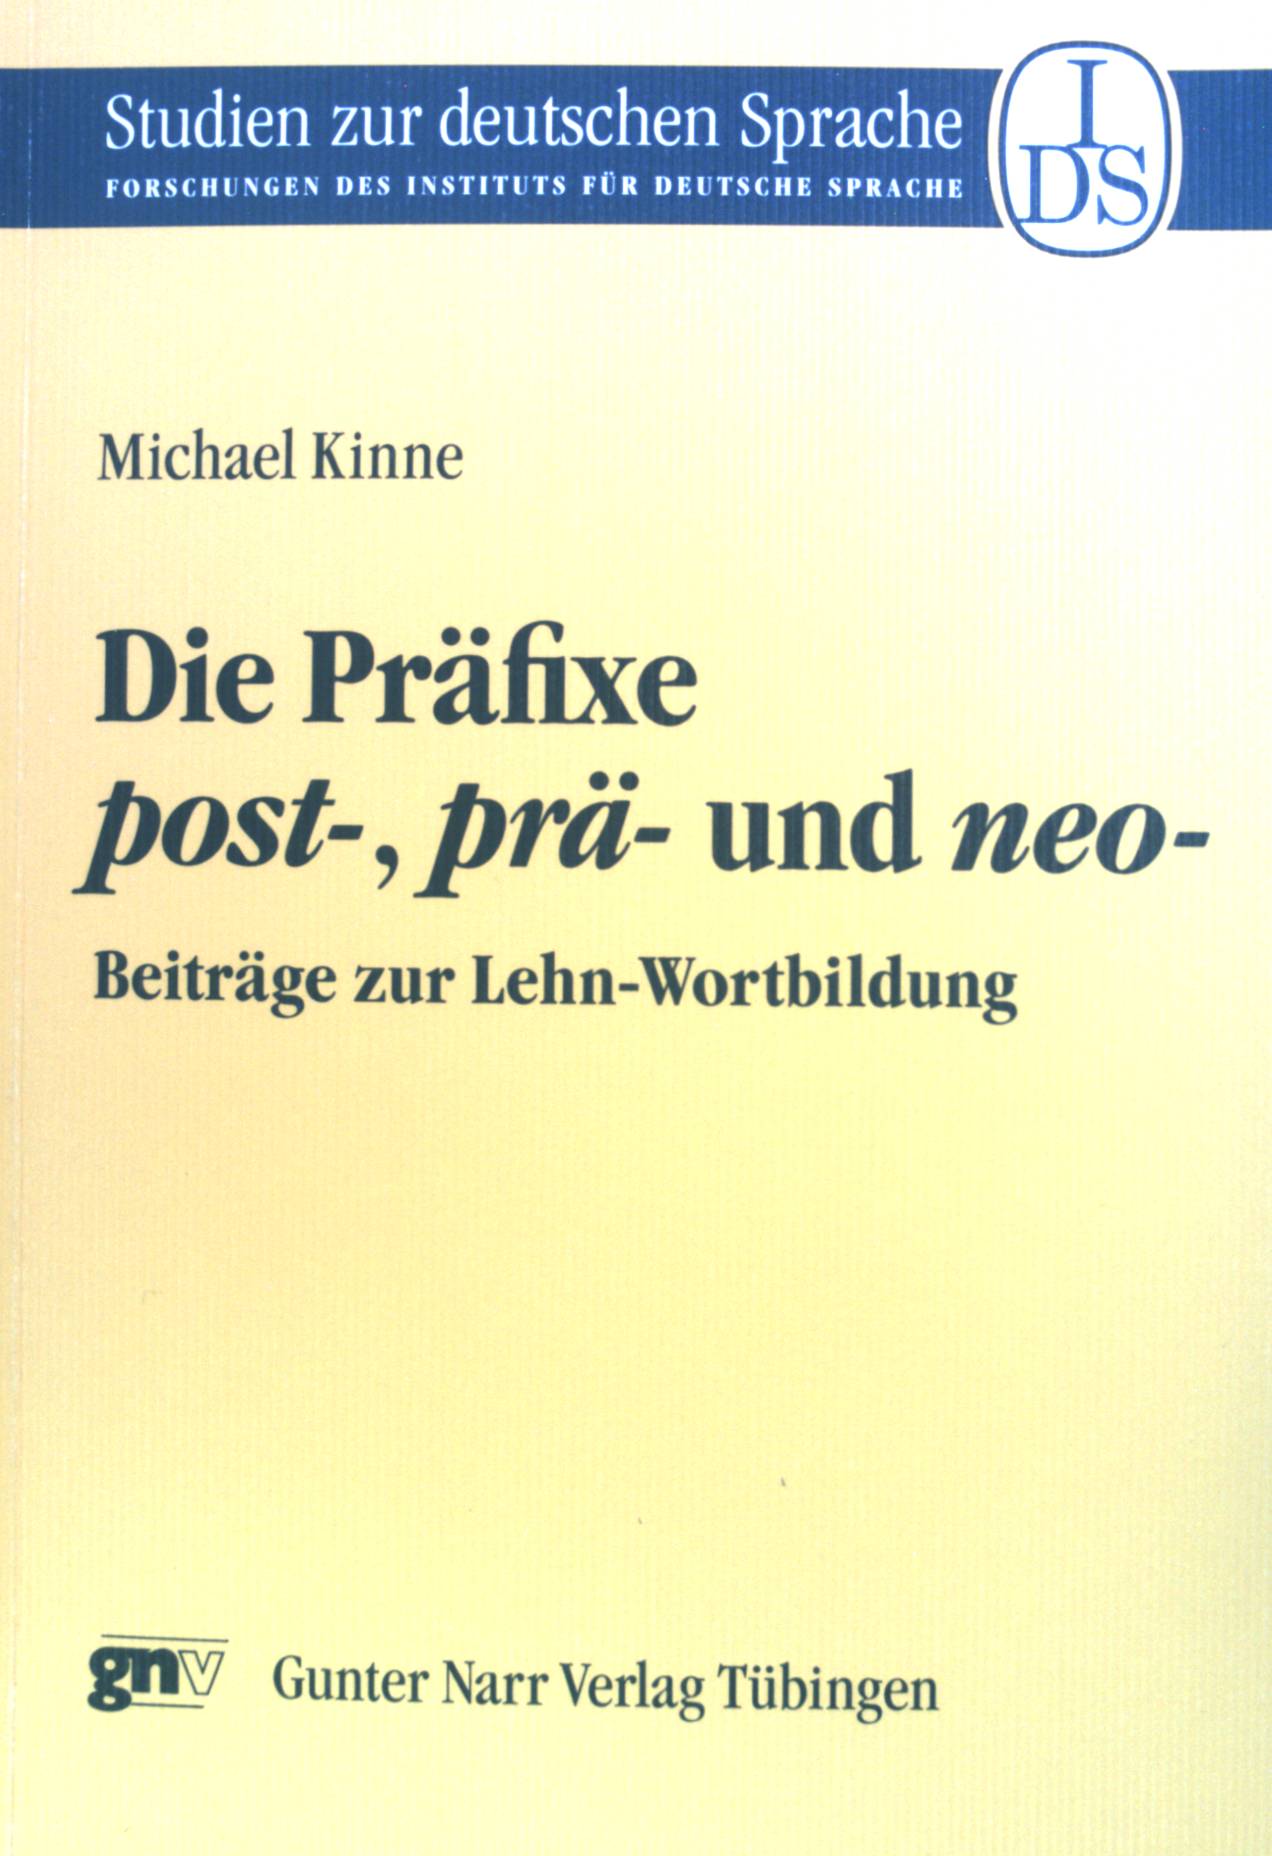 Die Präfixe post-, prä-, und neo- : Beiträge zur Lehn-Wortbildung. Studien zur deutschen Sprache ; Band. 18 - Kinne, Michael